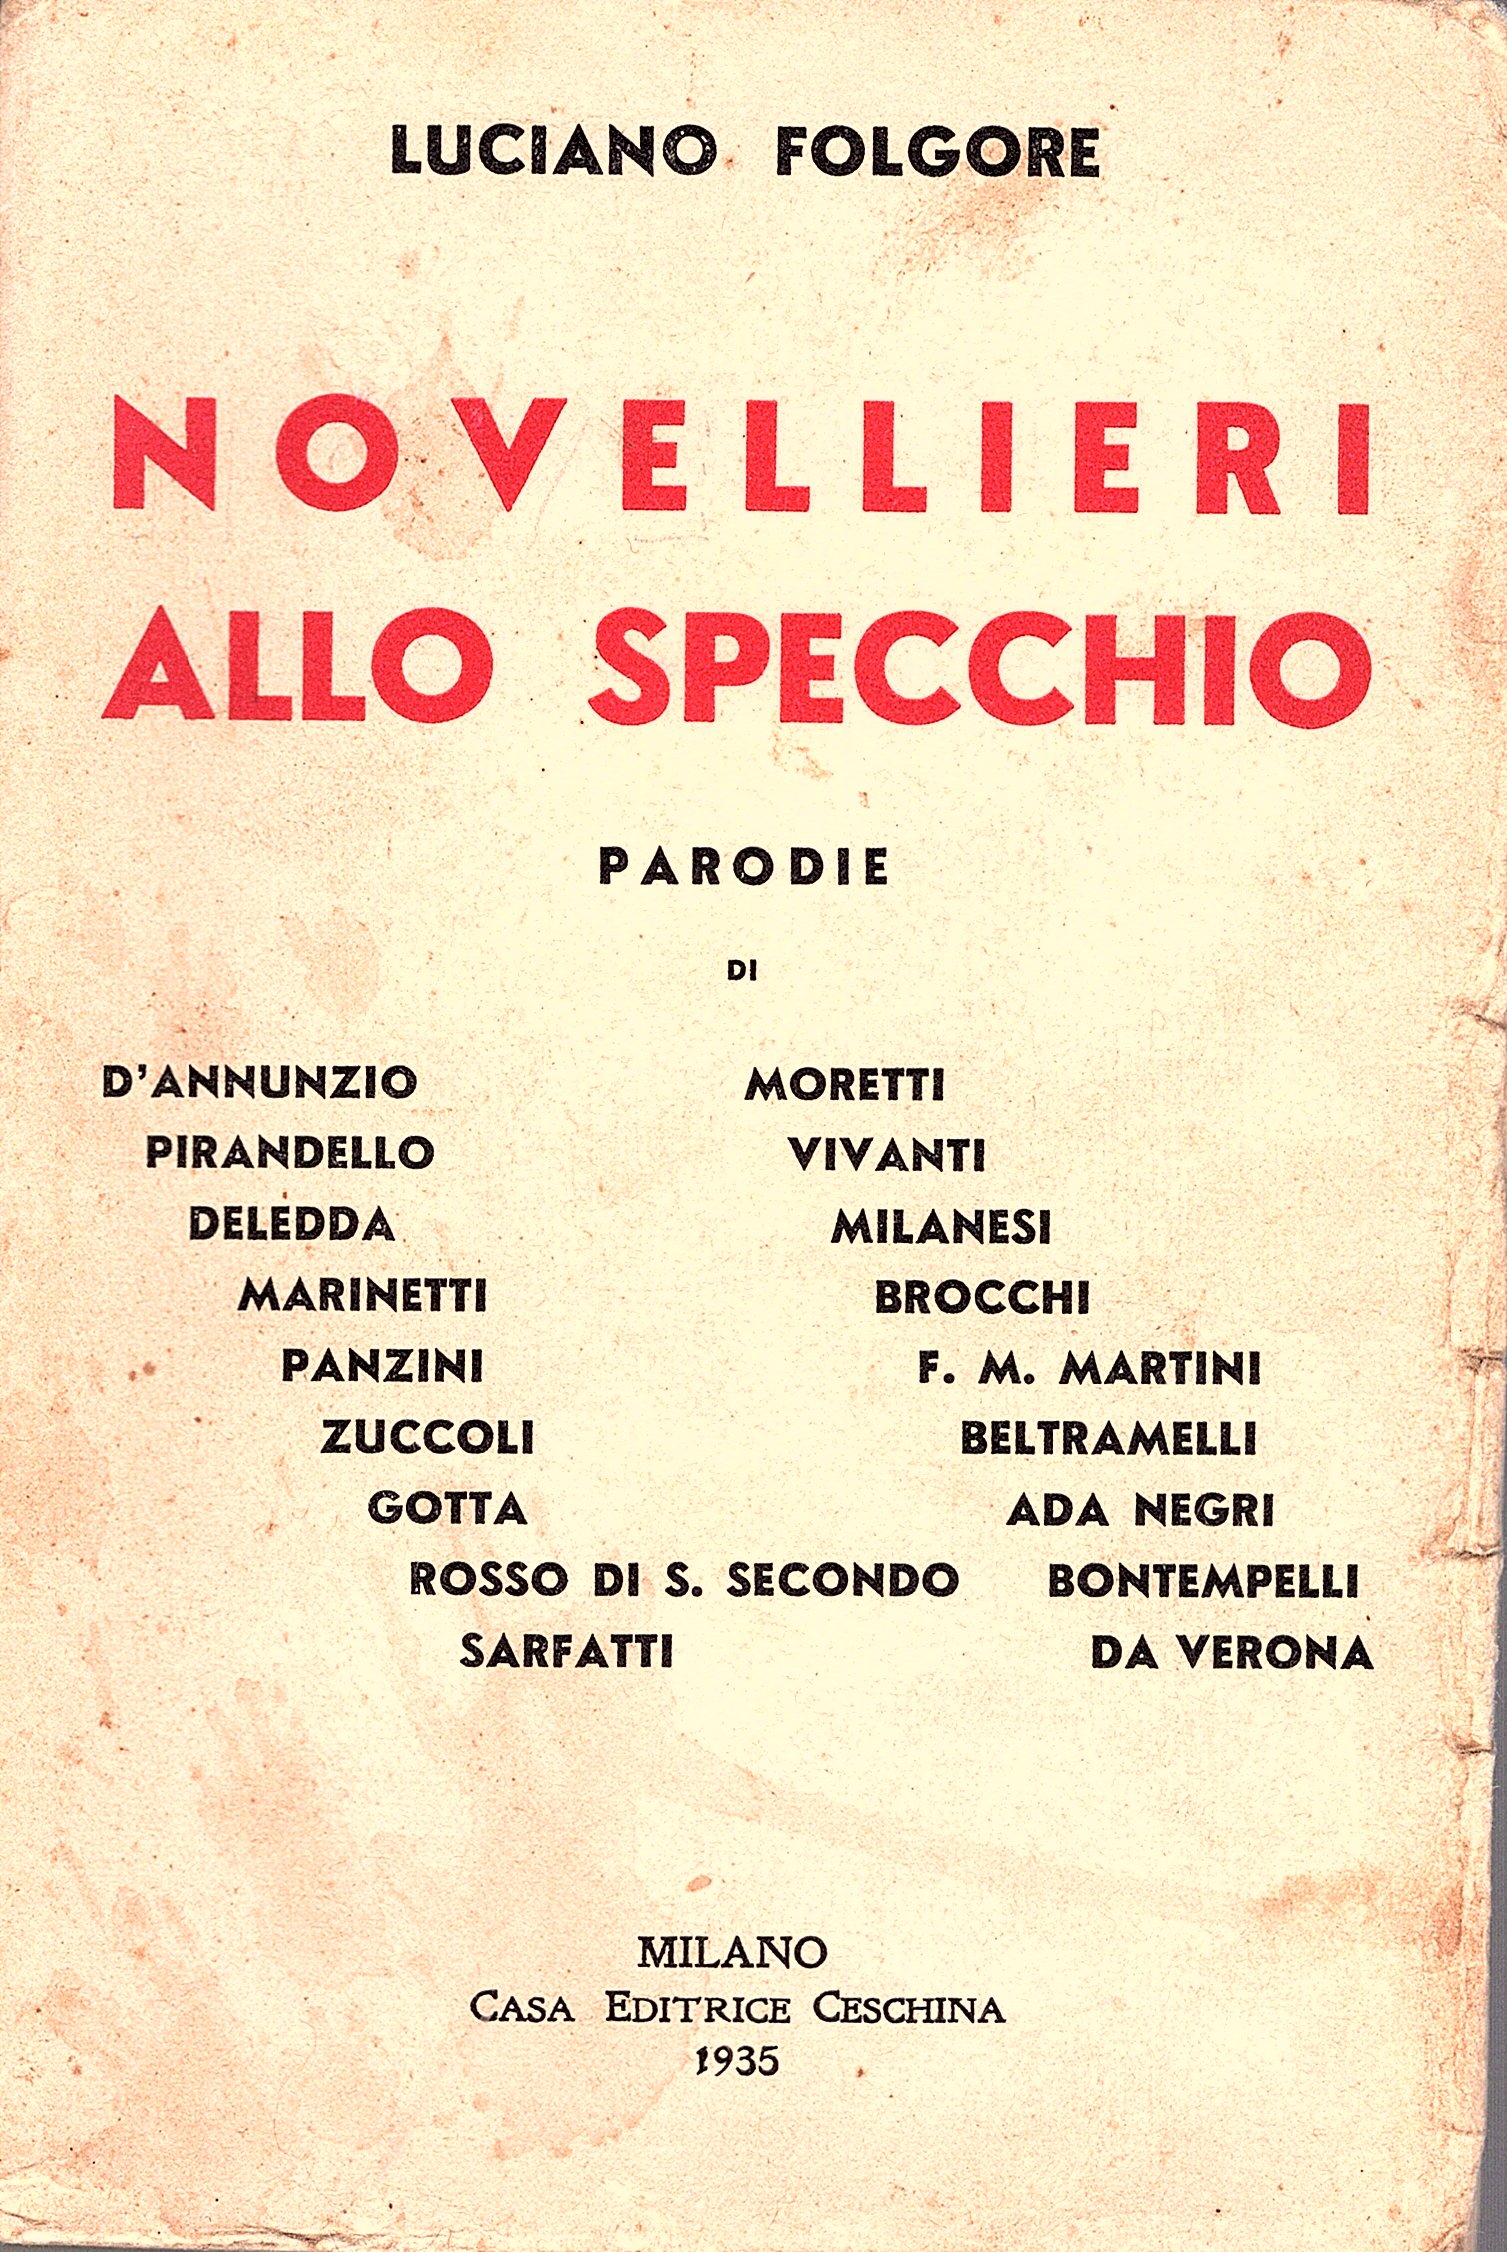 Novellieri allo specchio. Parodie di D'Annunzio, Pirandello, Deledda, Marinetti, Panzini, …